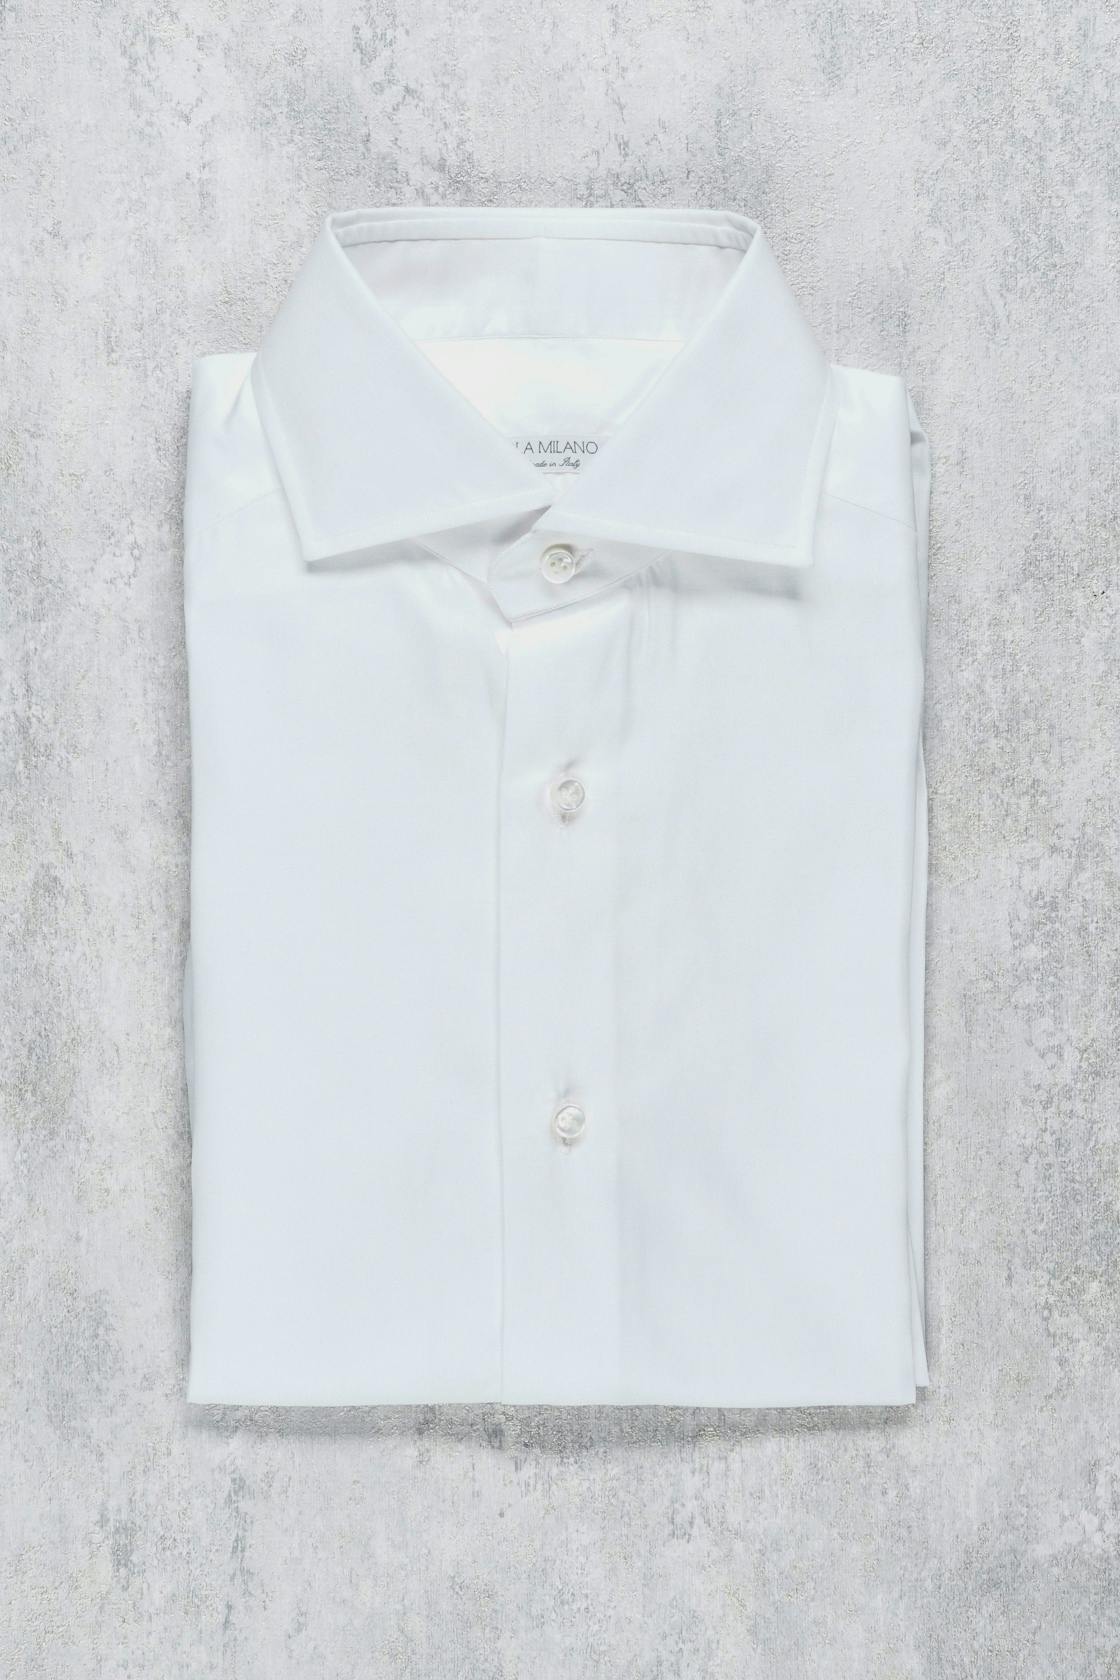 Viola Milano White Cotton Spread Collar Button Up Shirt